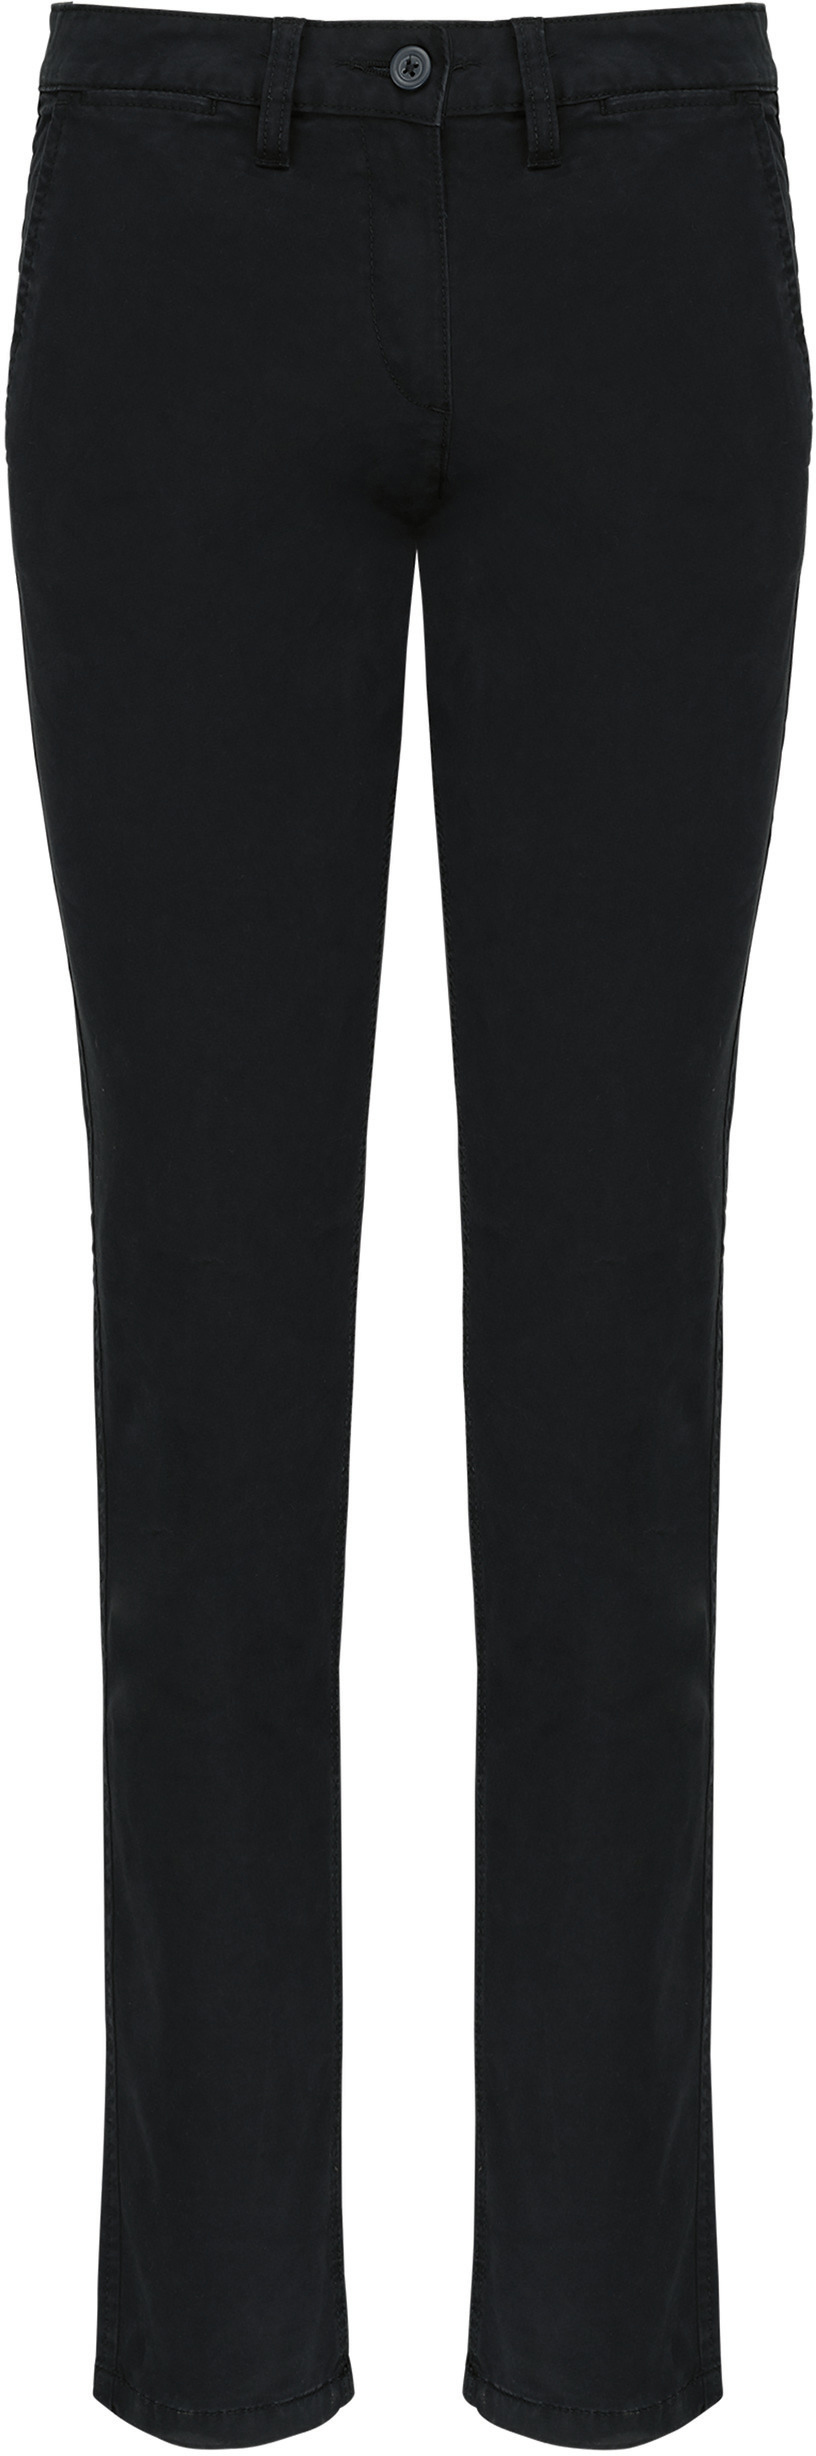 Dámské kalhoty CHINO K741 Barva: černá, Velikost: 34